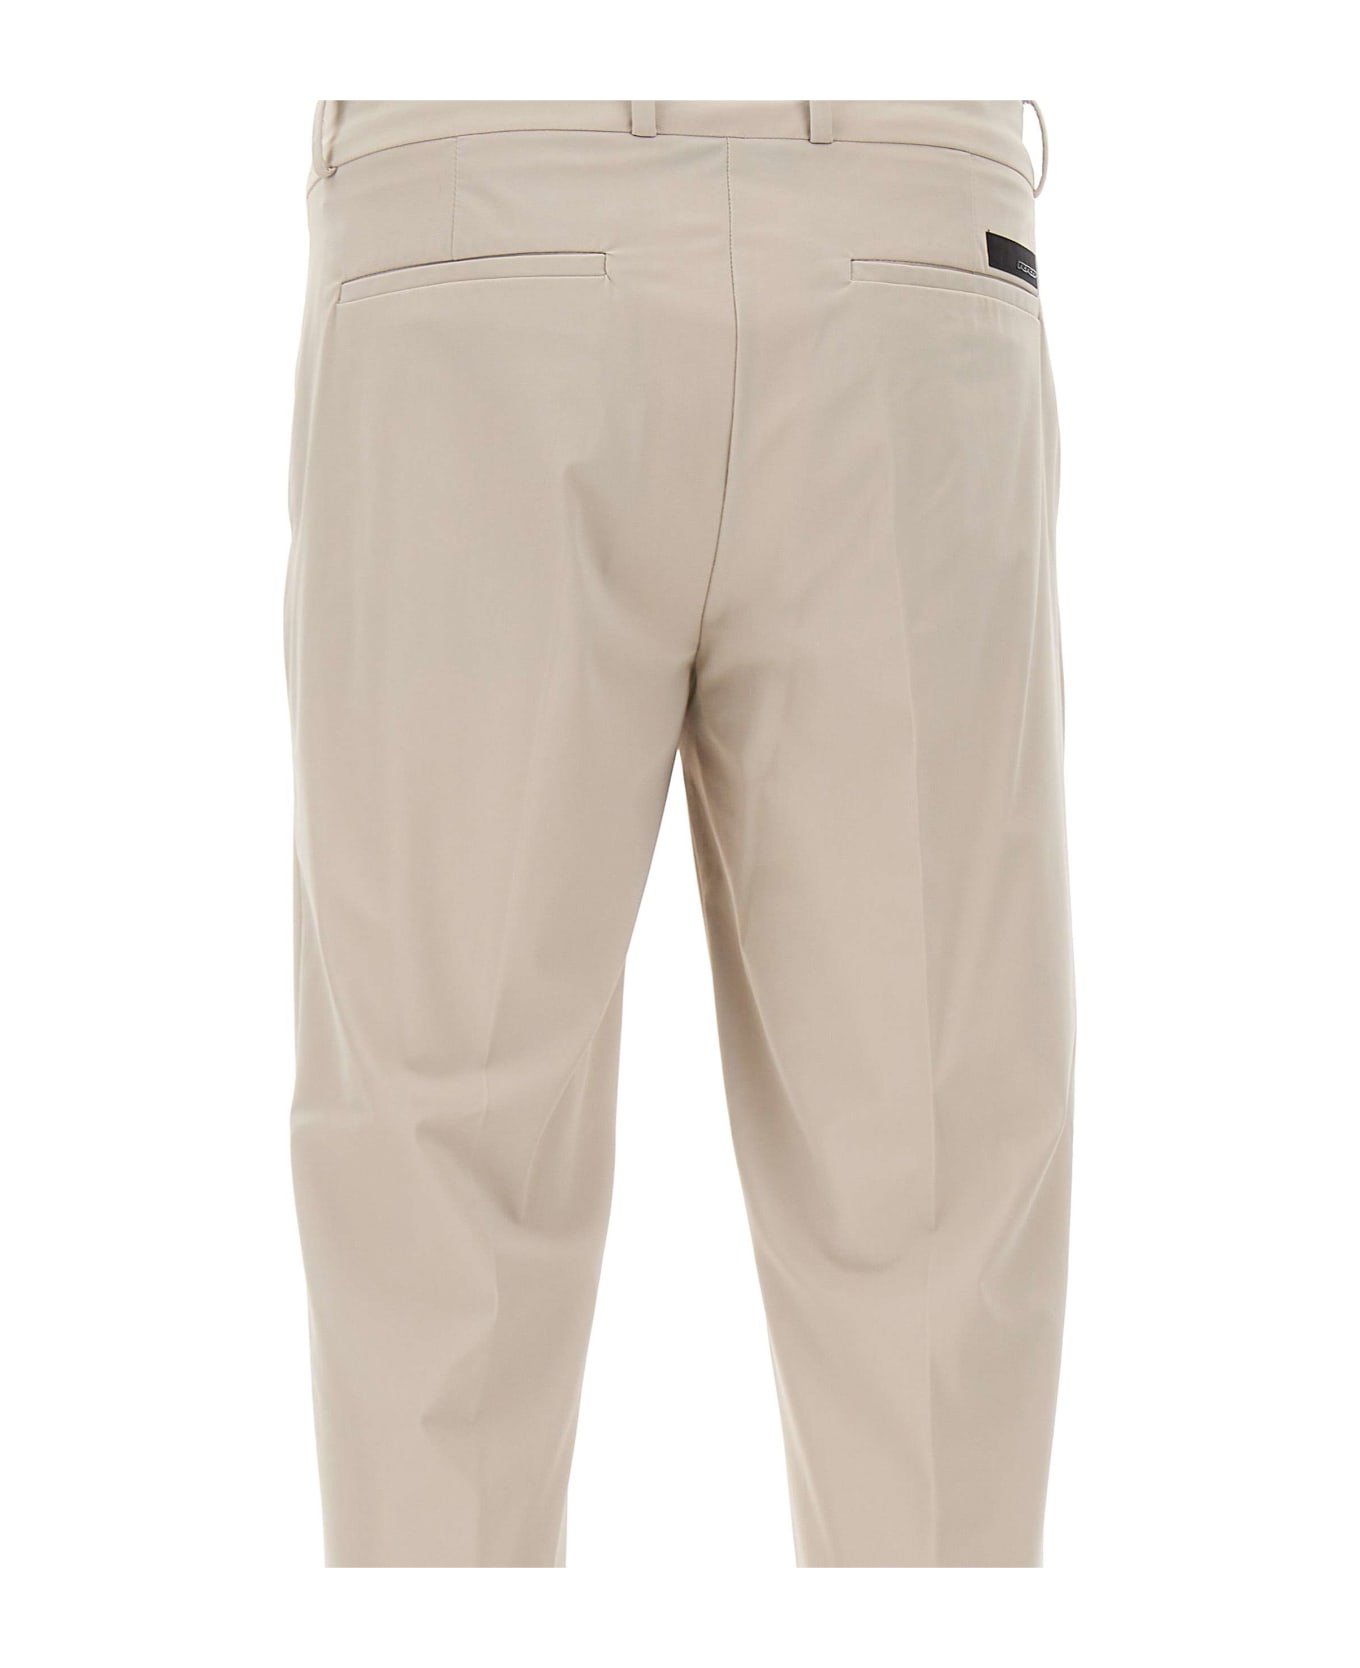 RRD - Roberto Ricci Design Men's Trousers "revo Chino" - BEIGE